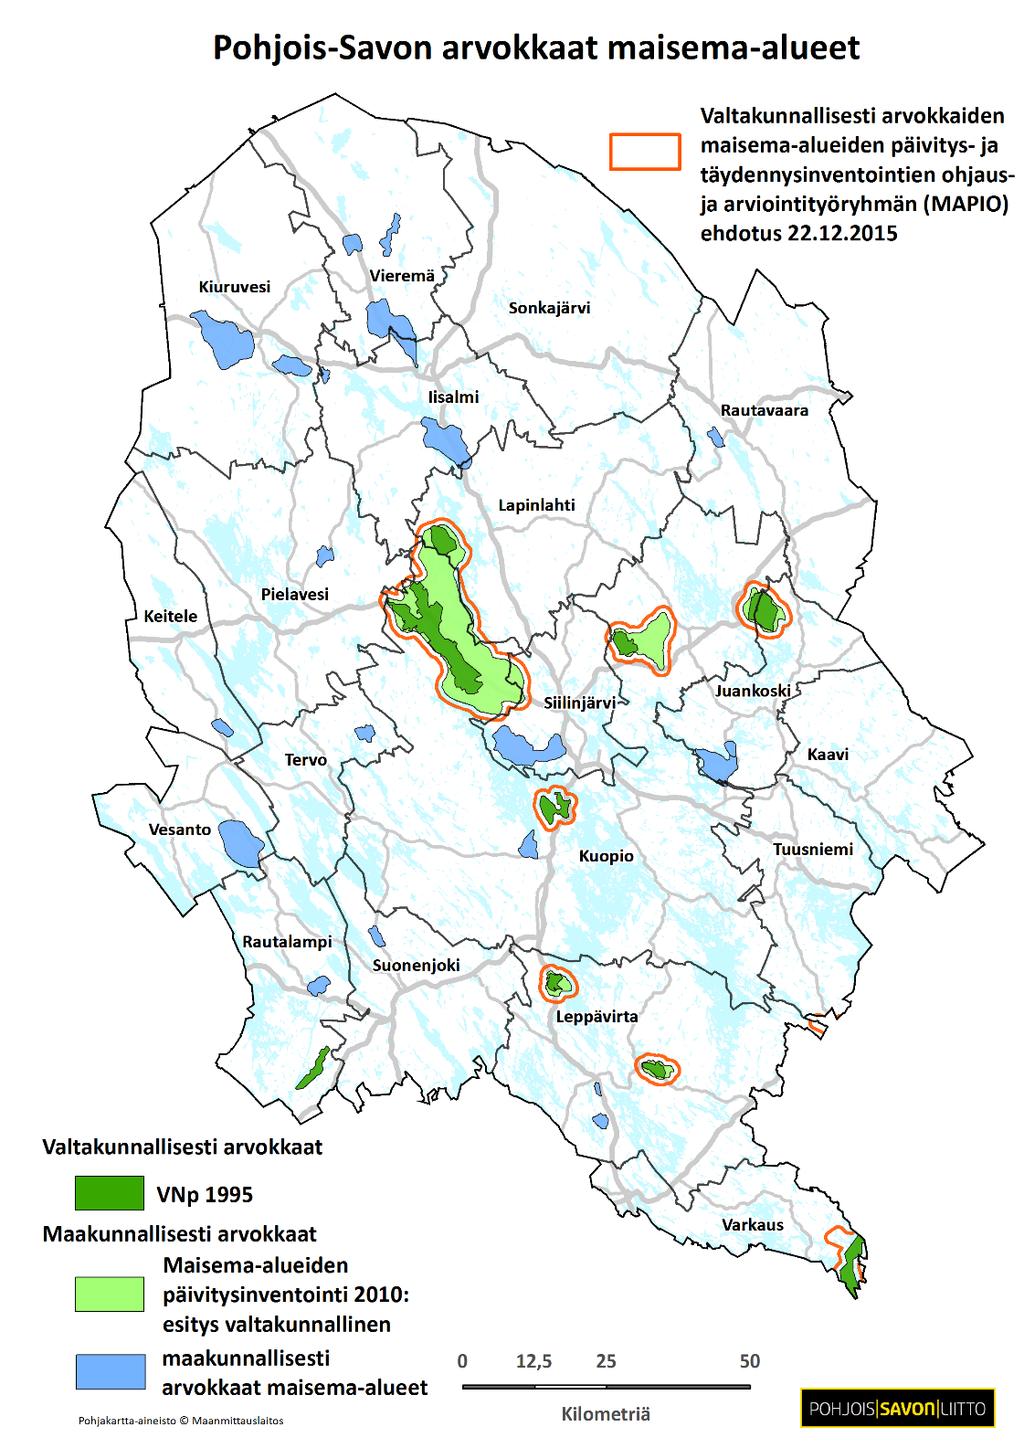 Pohjois-Savo Valtakunnallisesti arvokkaat maisema-alueet tarkentuvat 2016 alussa lausuntokierroksella.